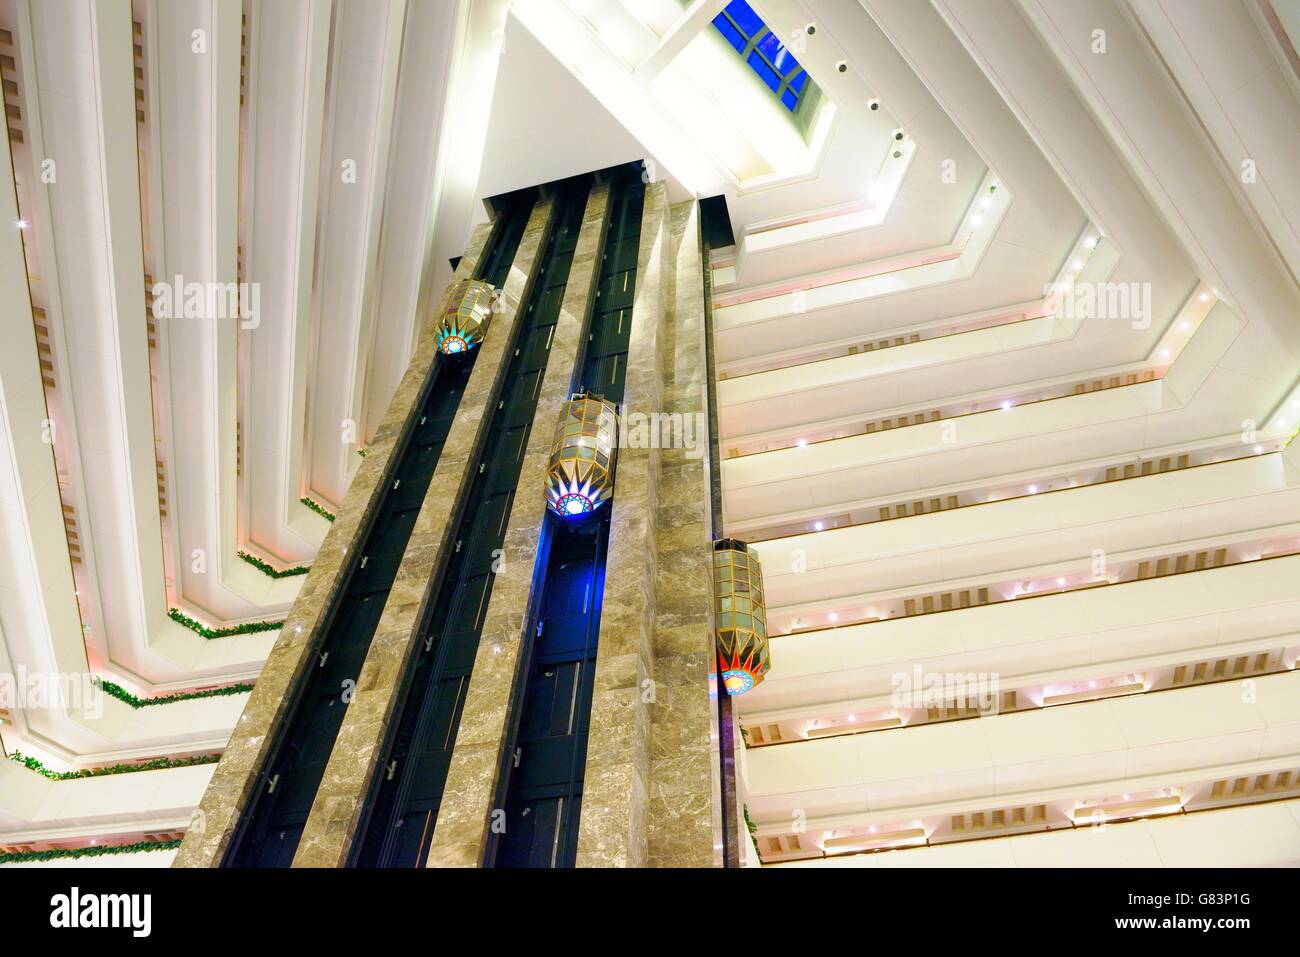 Das Sheraton Grand doha Resort & Convention Hotel an der Corniche in West Bay, Doha, Katar. Aufzüge im zentralen Atrium Stockfoto